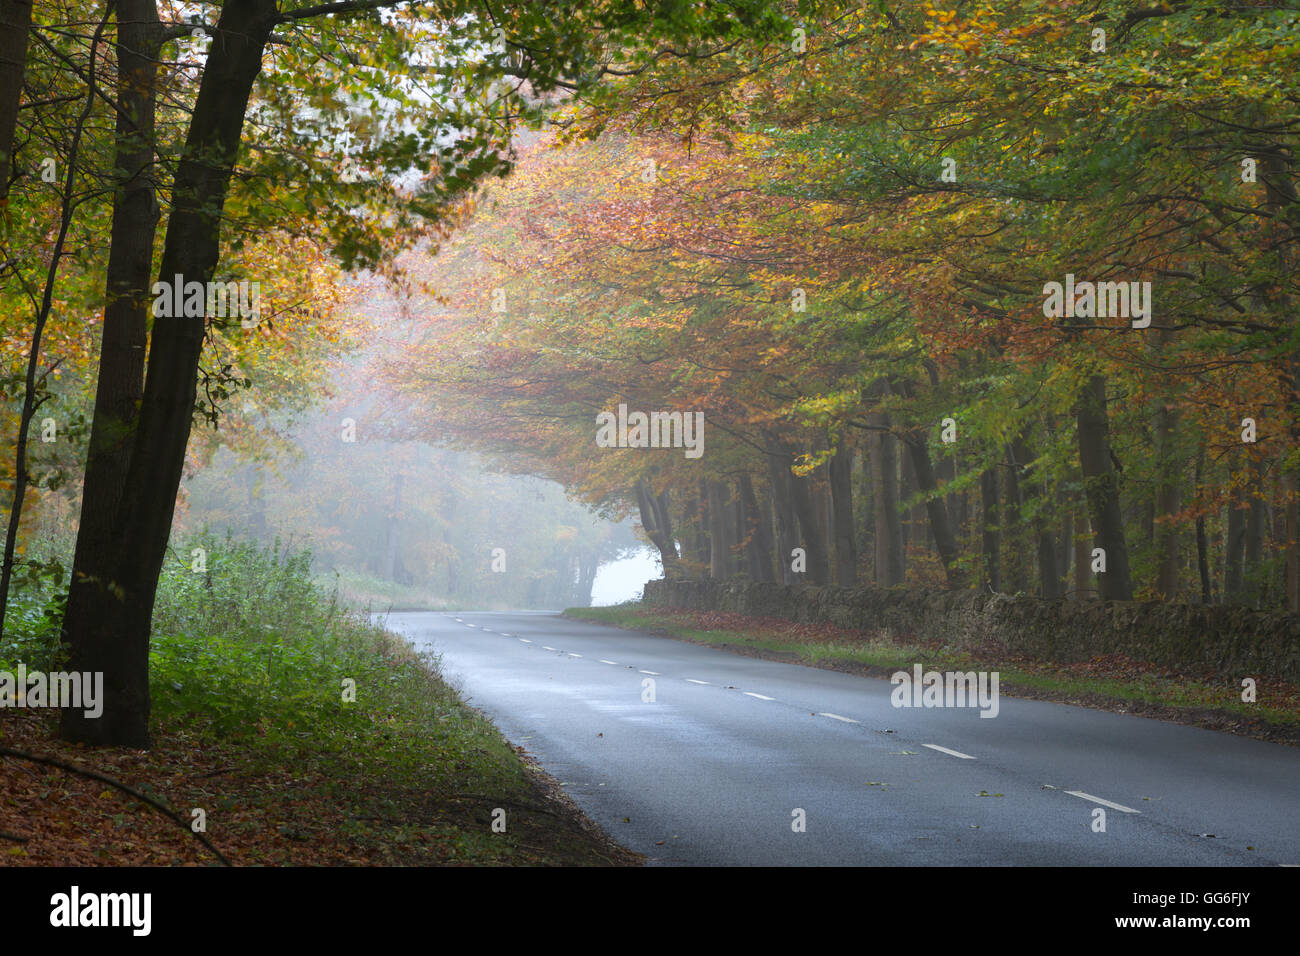 Route qui traverse des bois d'automne brumeux, près de Stow-on-the-Wold, Cotswolds, Gloucestershire, Angleterre, Royaume-Uni, Europe Banque D'Images